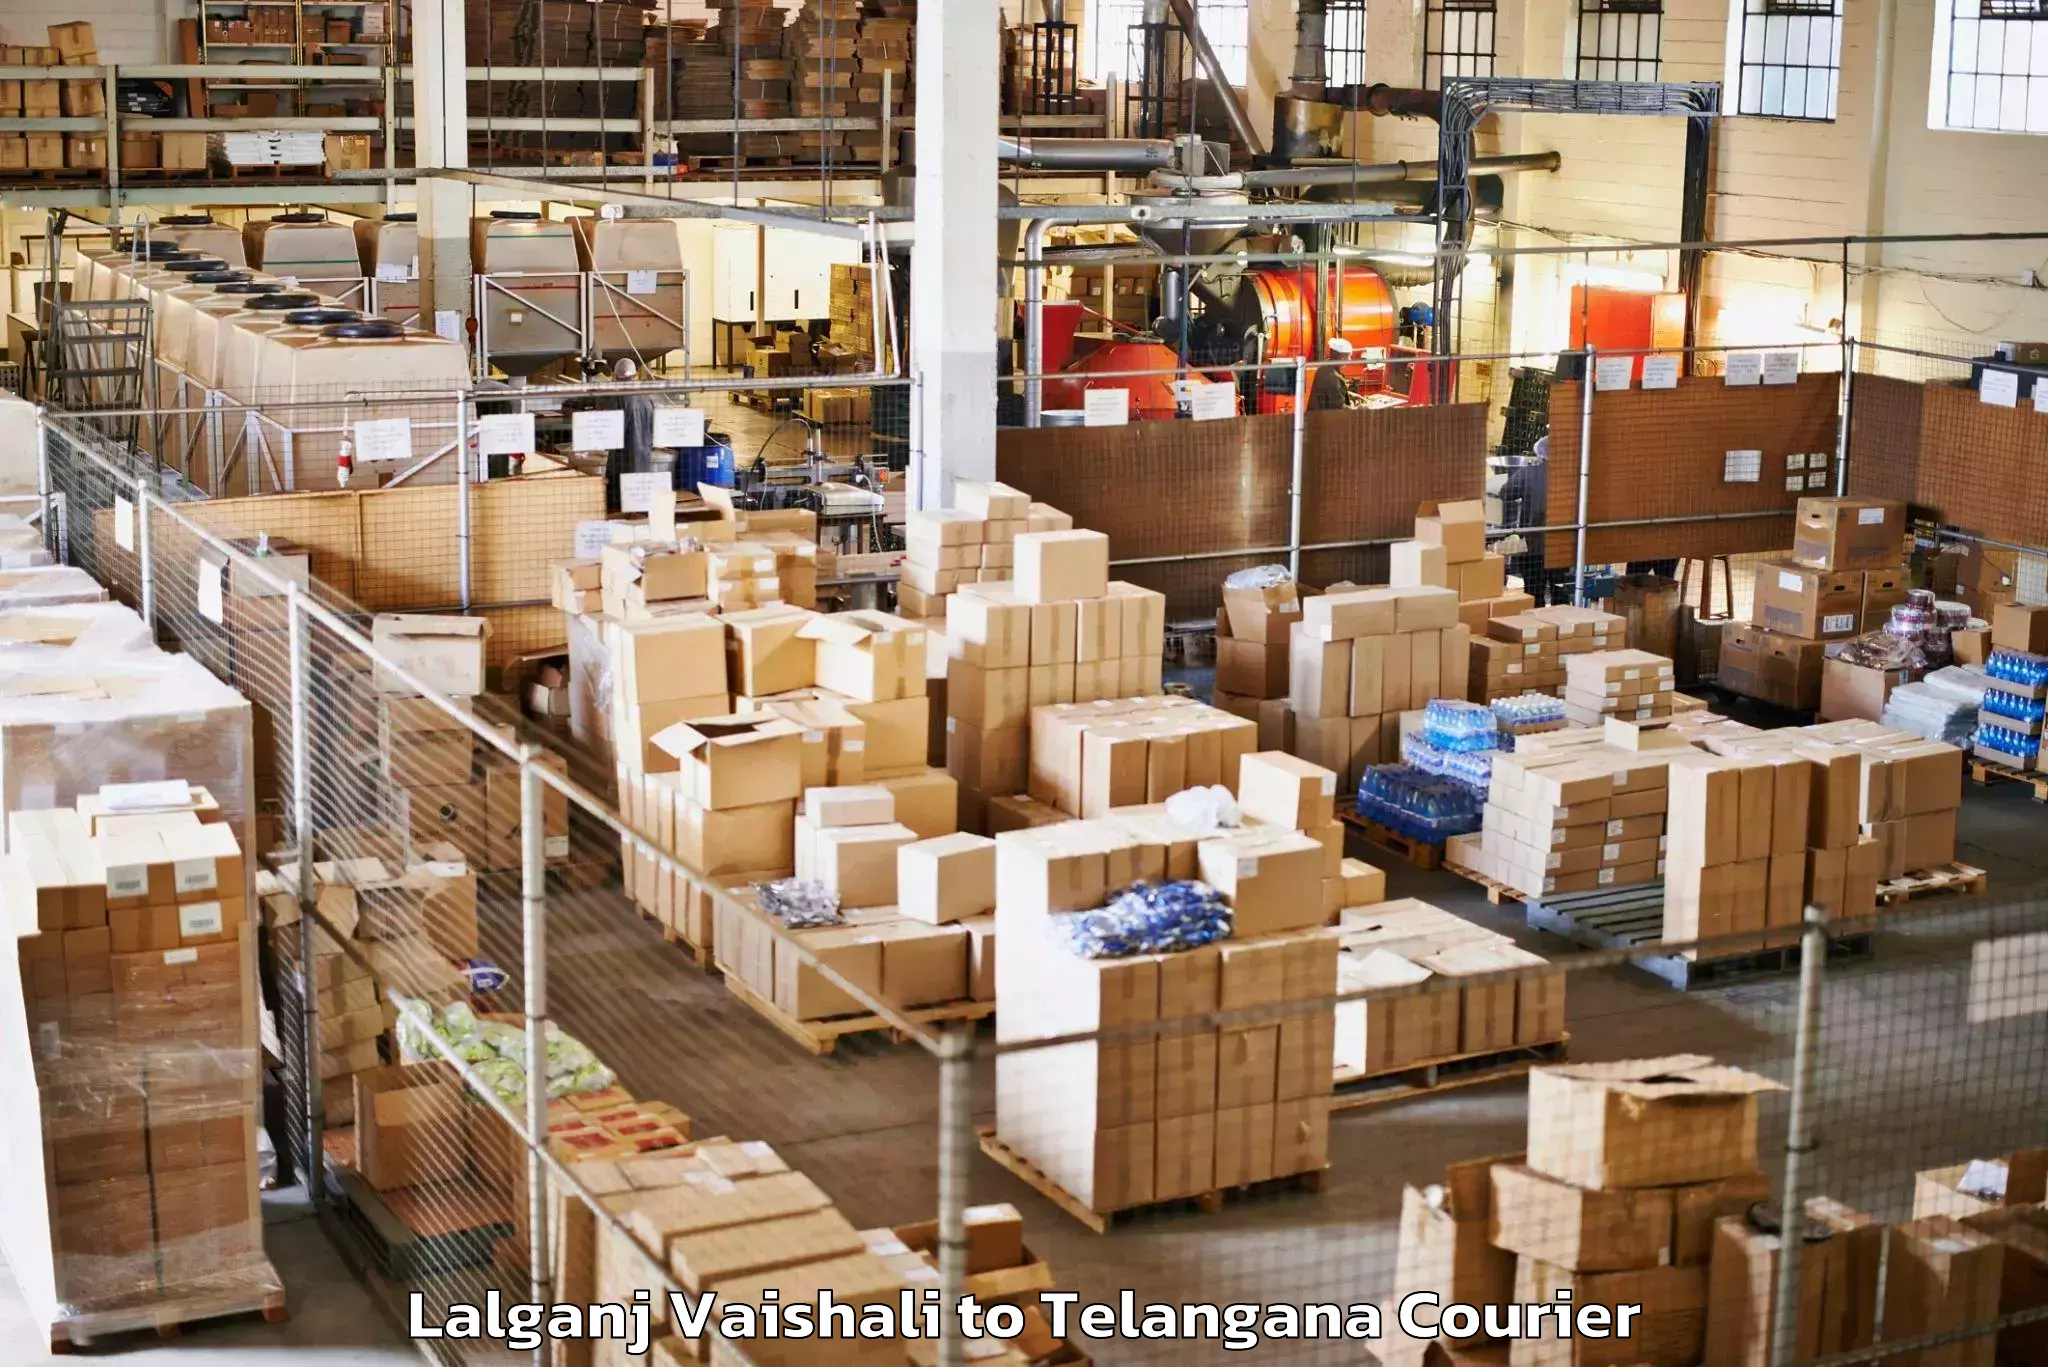 Luggage forwarding service Lalganj Vaishali to Telangana